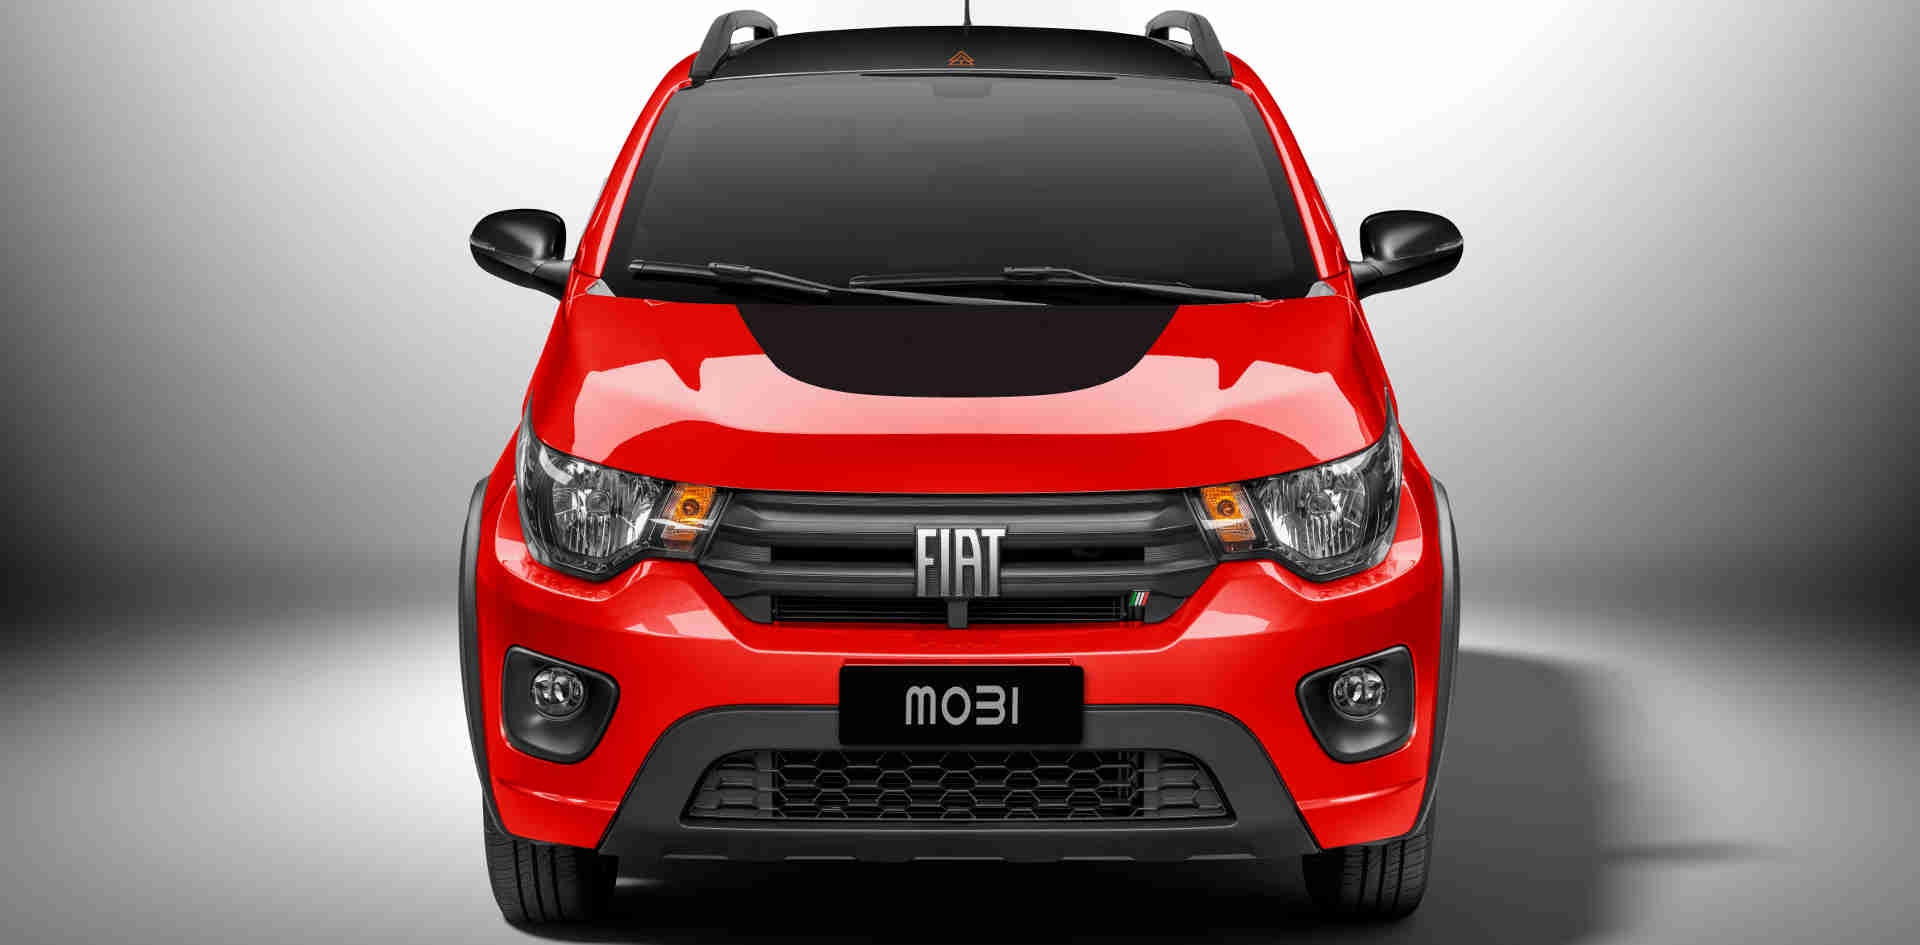 Destaque para a dianteira do Fiat Mobi Trekking 2021